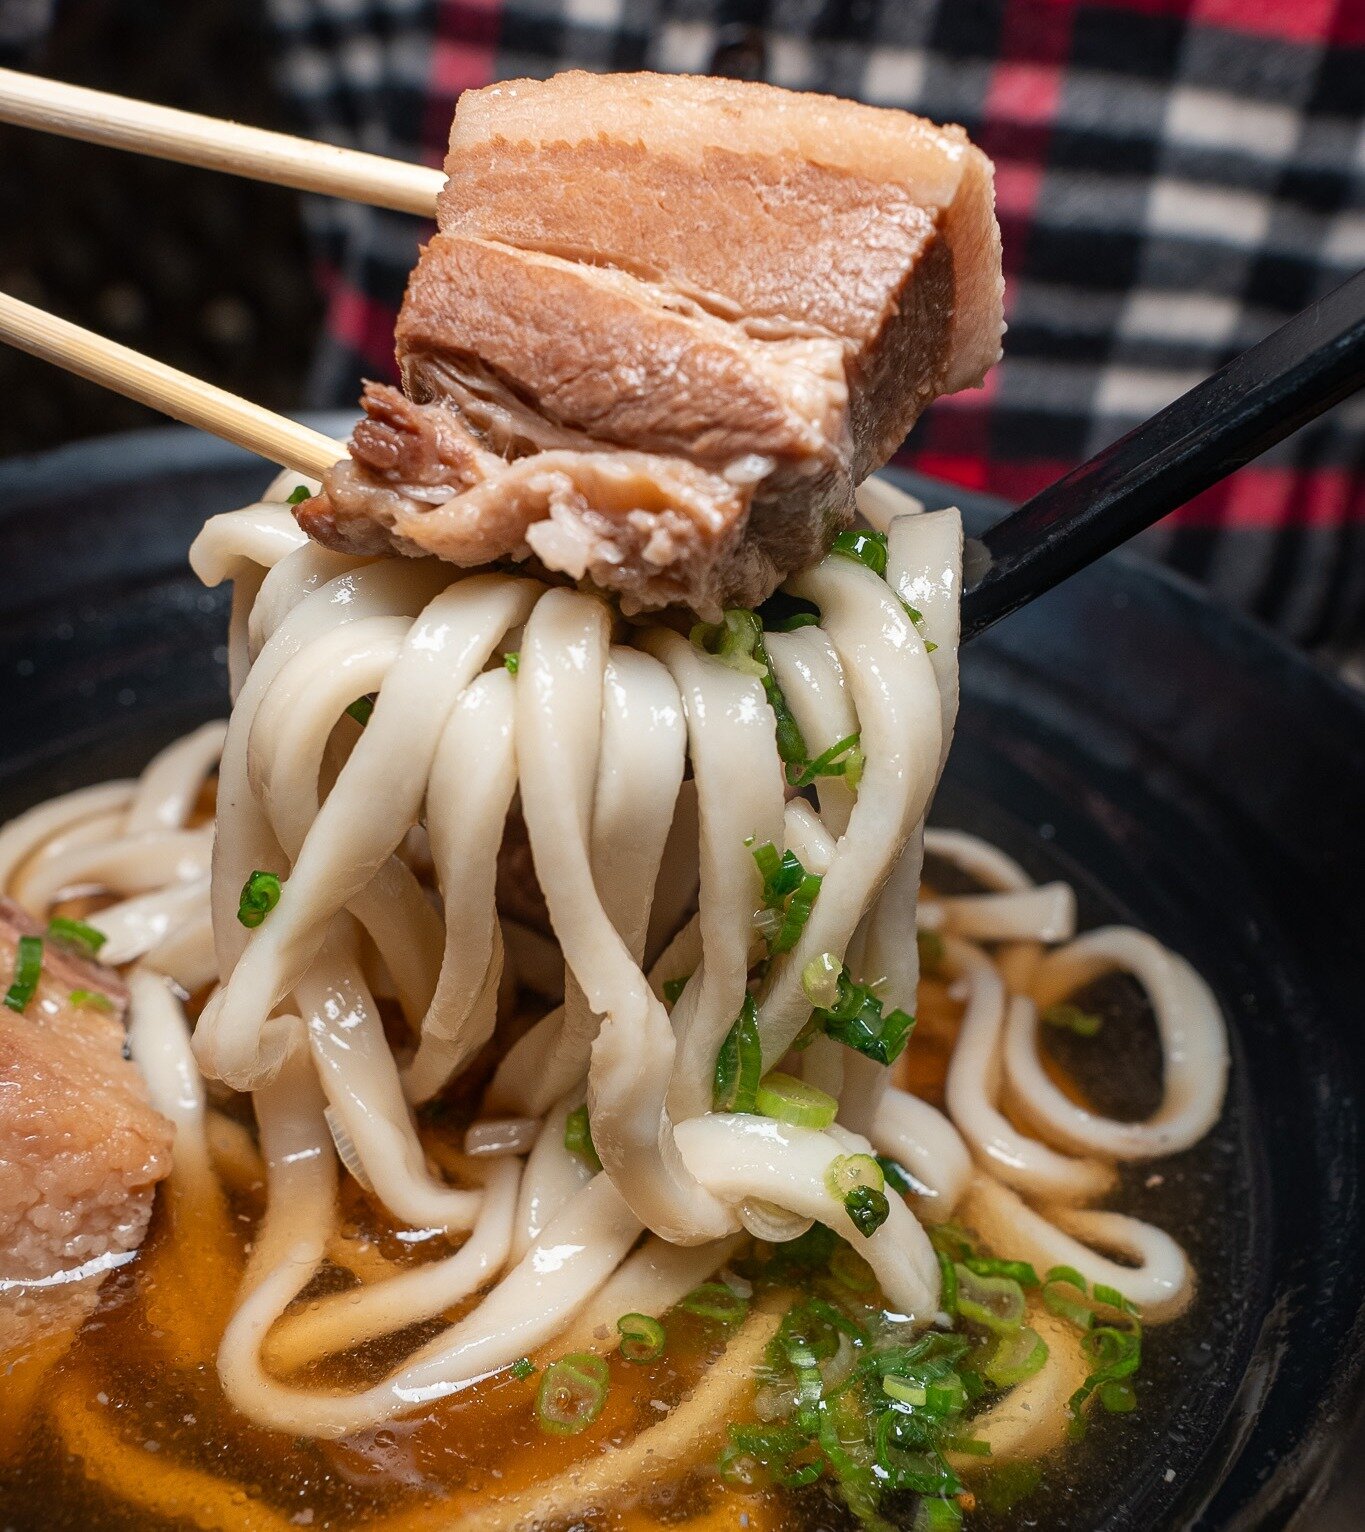 Savoring each strand of deliciousness &ndash; that's the magic of udon! Visit us today! #FoodieFindsLA 🍜✨ 

👇 Freshly homemade noodles 
◾️◽️◾️◽️◾️◽️◾️◽️◾️◽️
🍜 ᴍᴀʀᴜɢᴀᴍᴇ ᴍᴏɴᴢᴏ ʟᴀ
⏰ ᴍᴏɴ - ᴛʜᴜʀꜱ : 11:30 ᴀᴍ - 9:00 ᴘᴍ 
⏰ ꜰʀɪ - ꜱᴜɴ: 11:30 ᴀᴍ - 10:00 ᴘᴍ
?